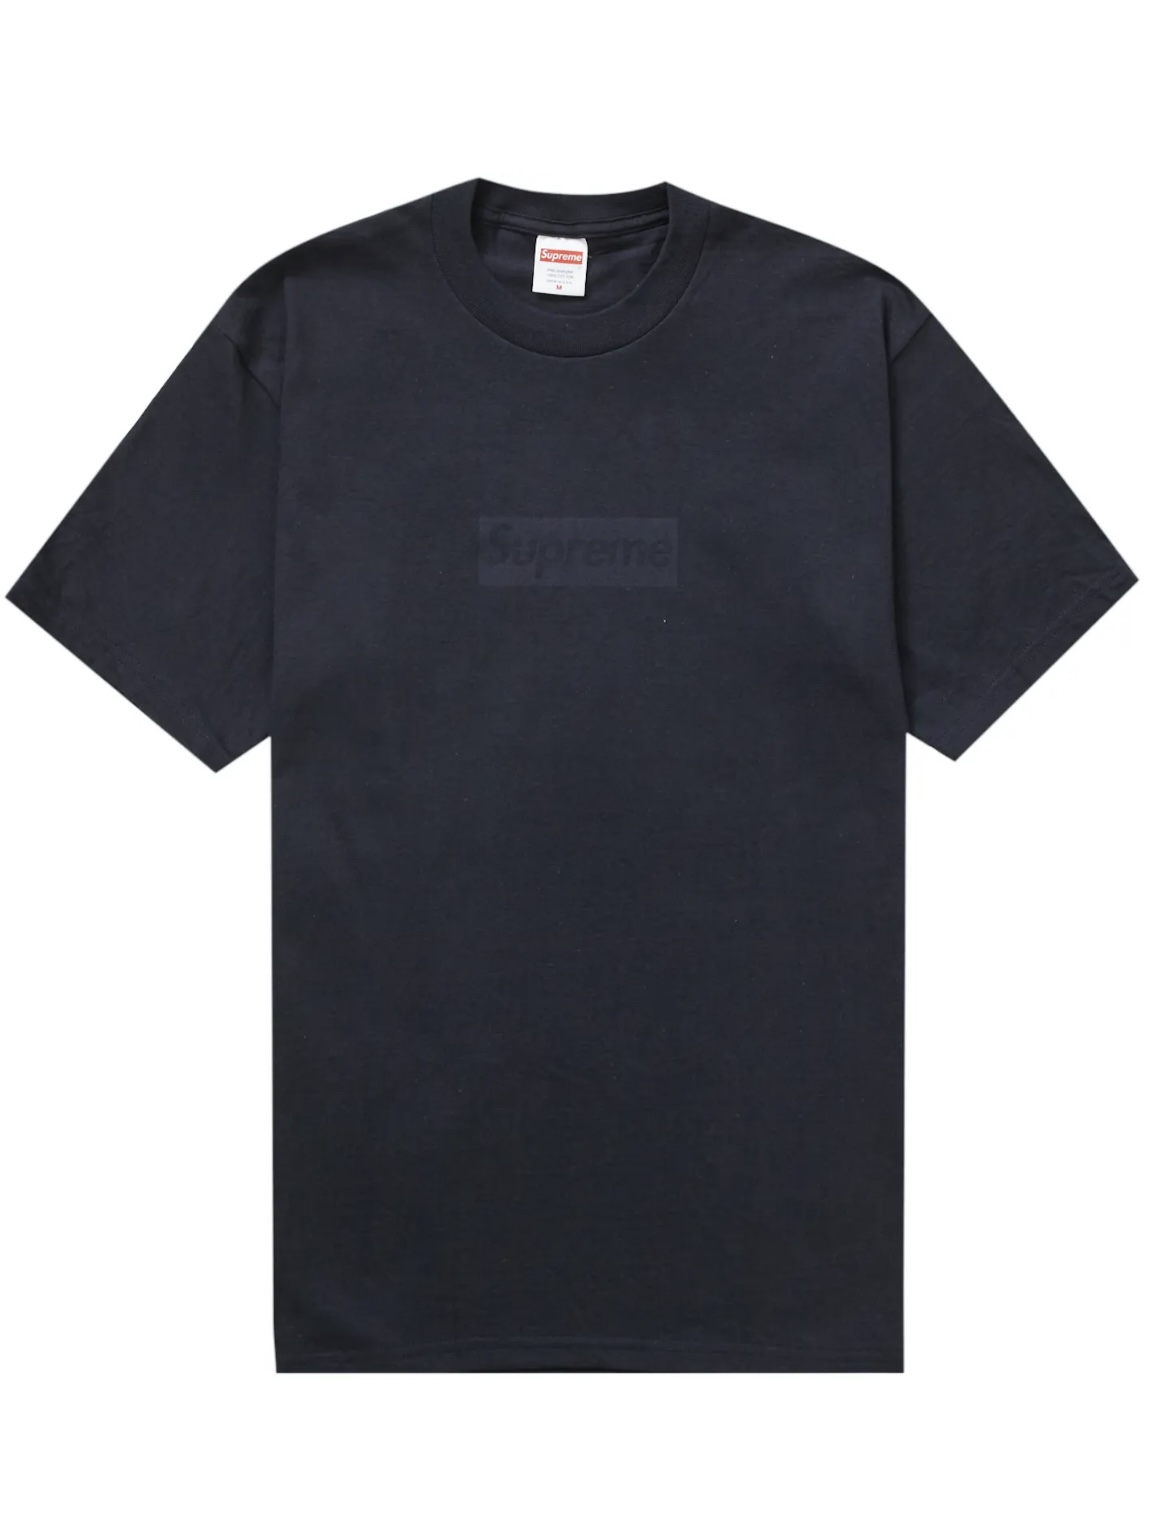 Supreme box logo tee “black” Lシャツ